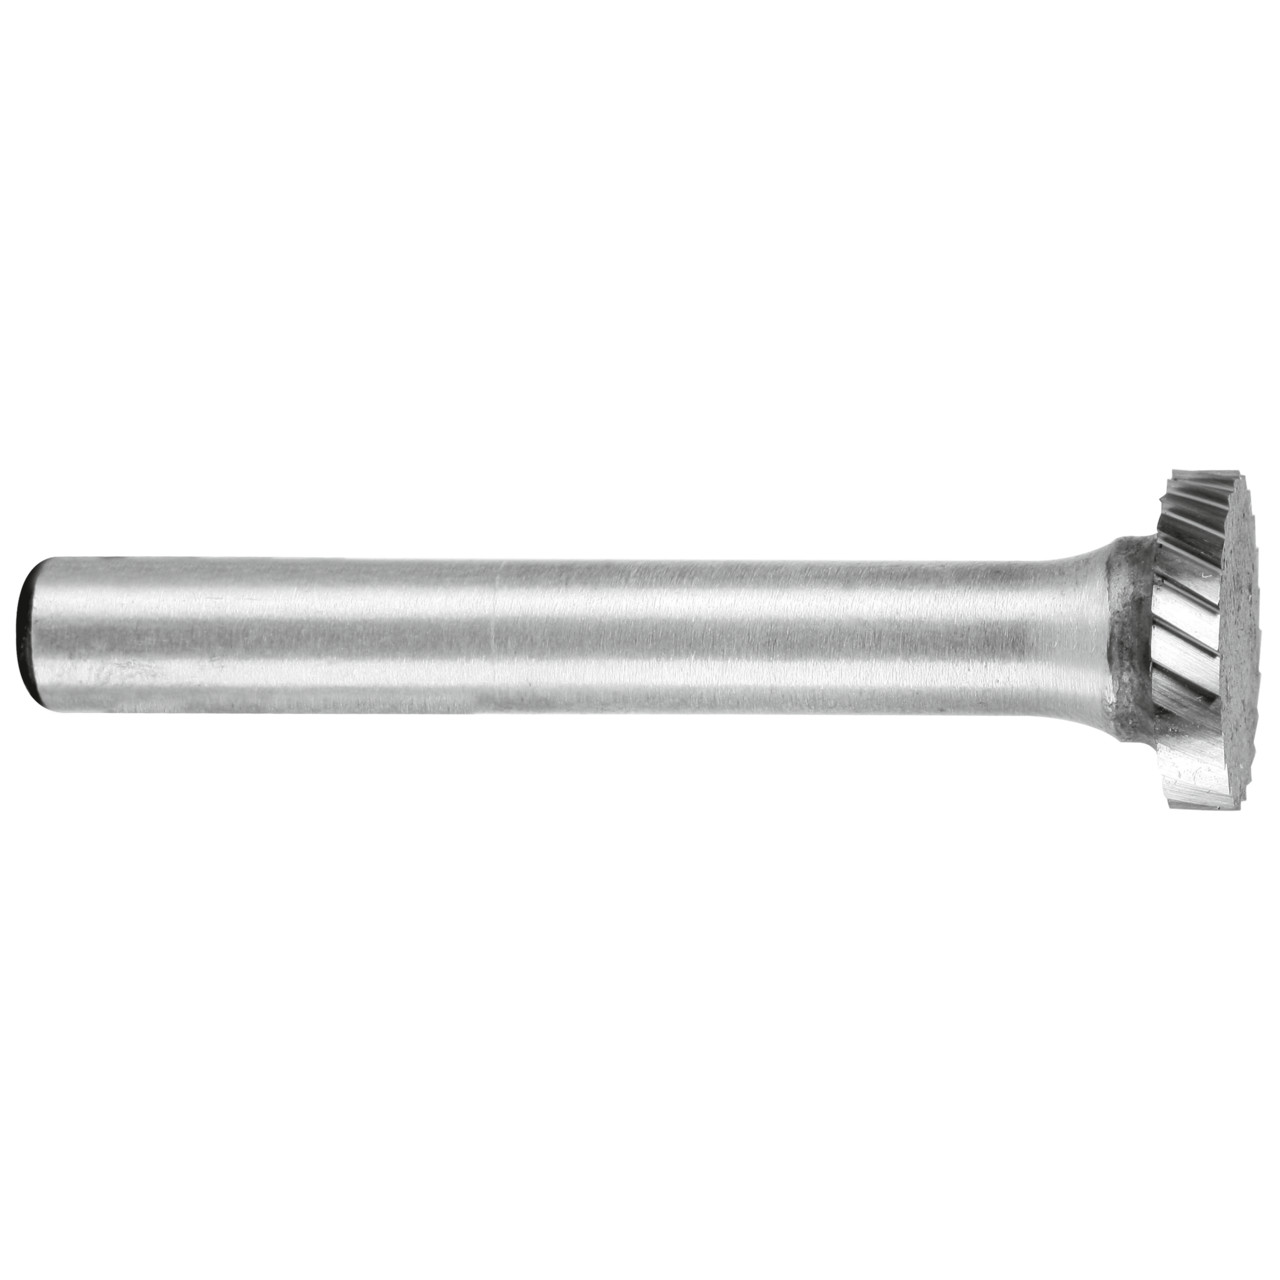 TYROLIT hardmetalen frees DxT-SxL 12x2,6-6x48 Voor gietijzer, staal en roestvast staal, vorm: 52RND - vertanding, Art. 801530